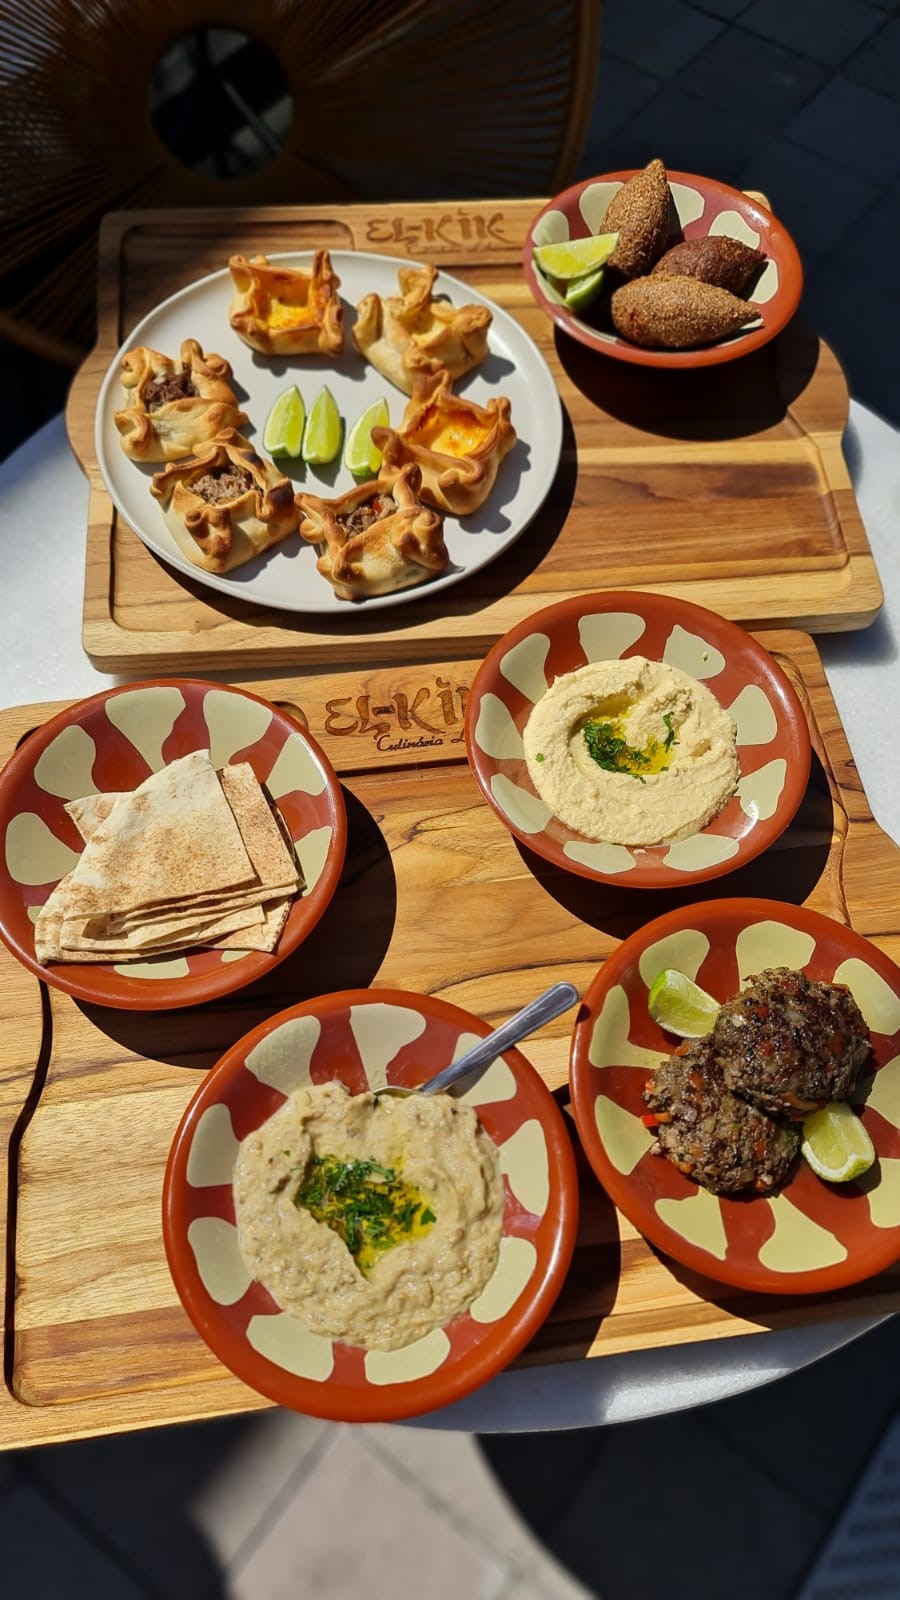 Restaurante de culinária árabe El-Kik abre as portas no Casa & Design